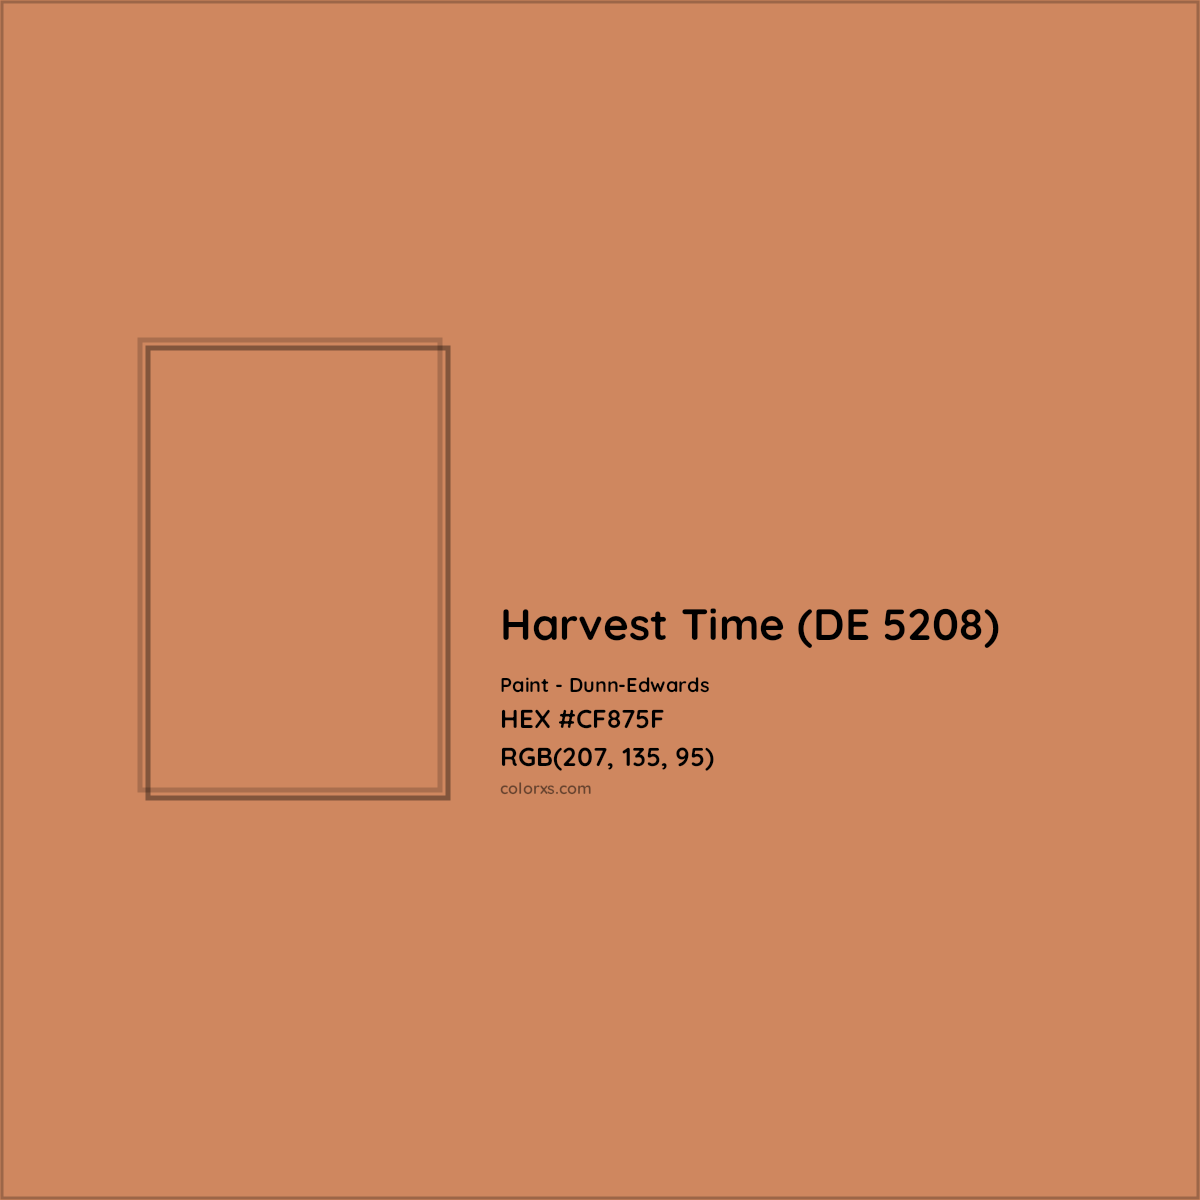 HEX #CF875F Harvest Time (DE 5208) Paint Dunn-Edwards - Color Code